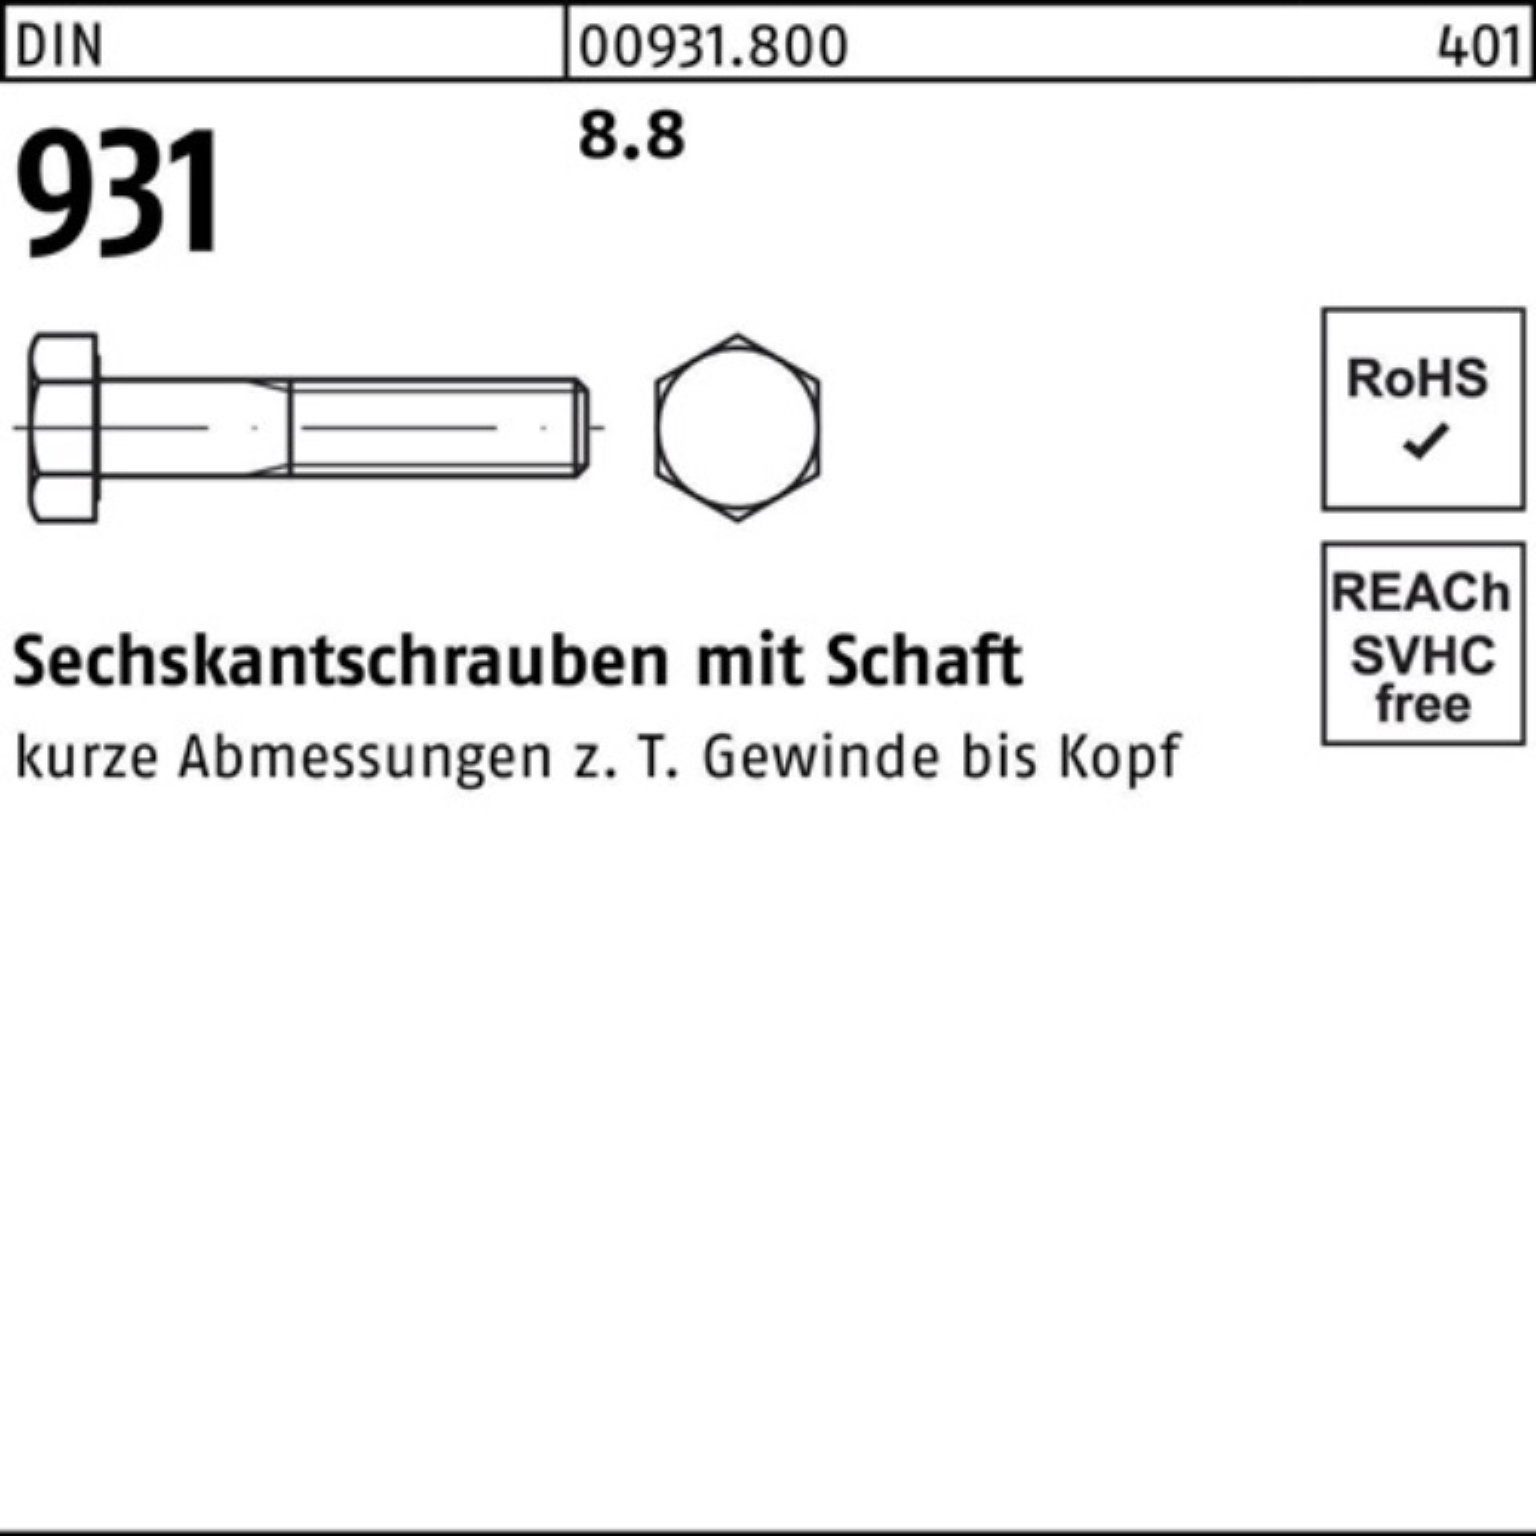 1 DIN Reyher Schaft DIN Stück 100er M30x Sechskantschraube Sechskantschraube 931 Pack 260 8.8